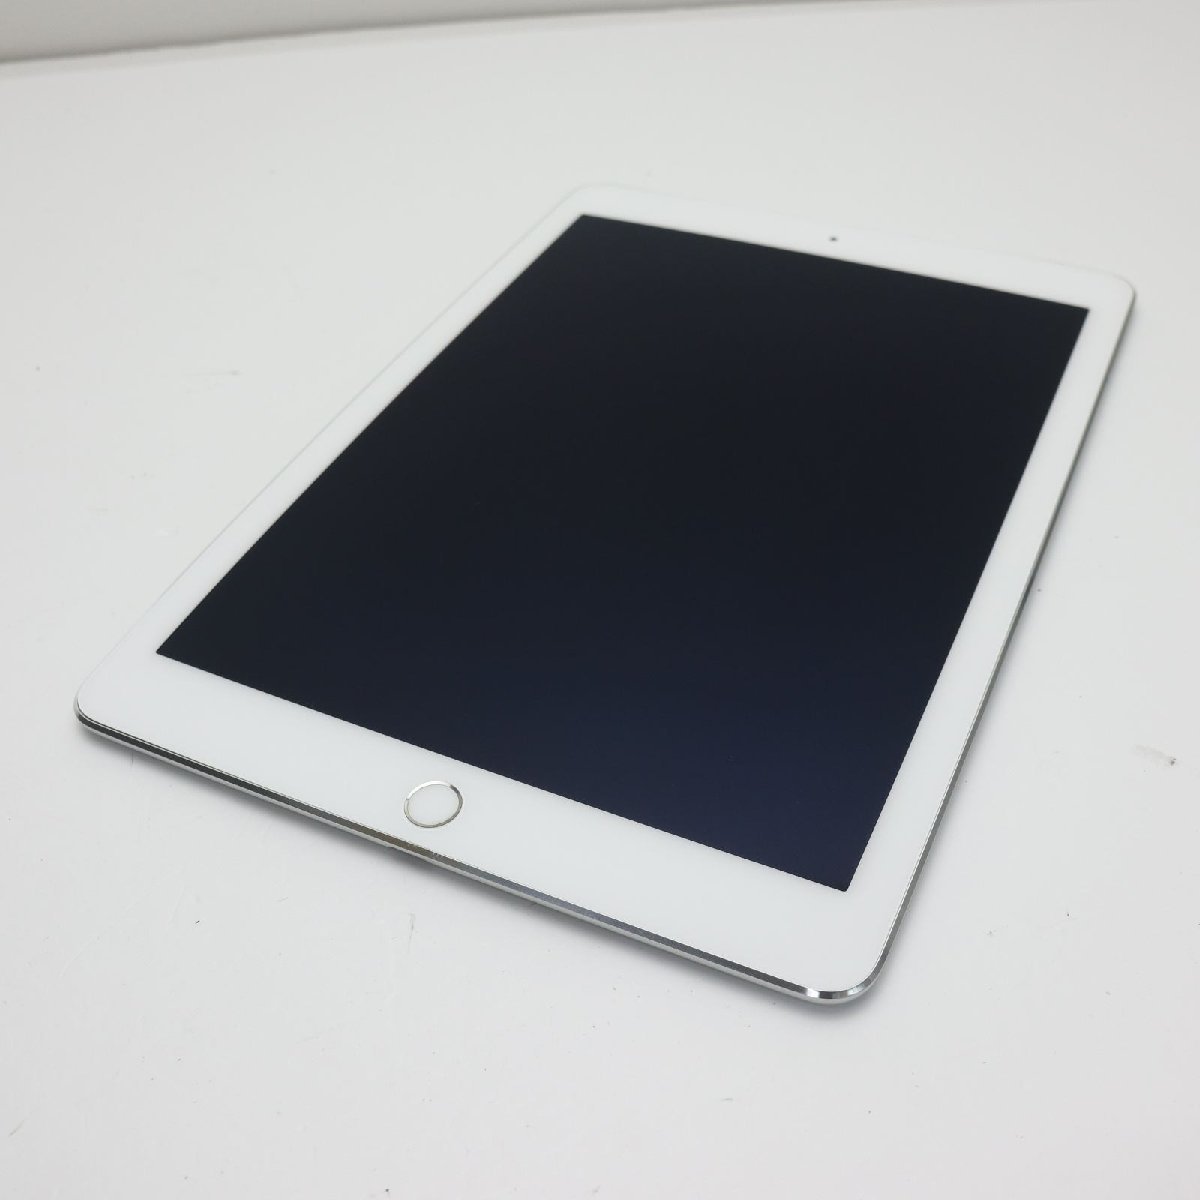 美品 docomo iPad Air 2 Cellular 16GB シルバー 即日発送 タブレットApple 本体 あすつく 土日祝発送OK